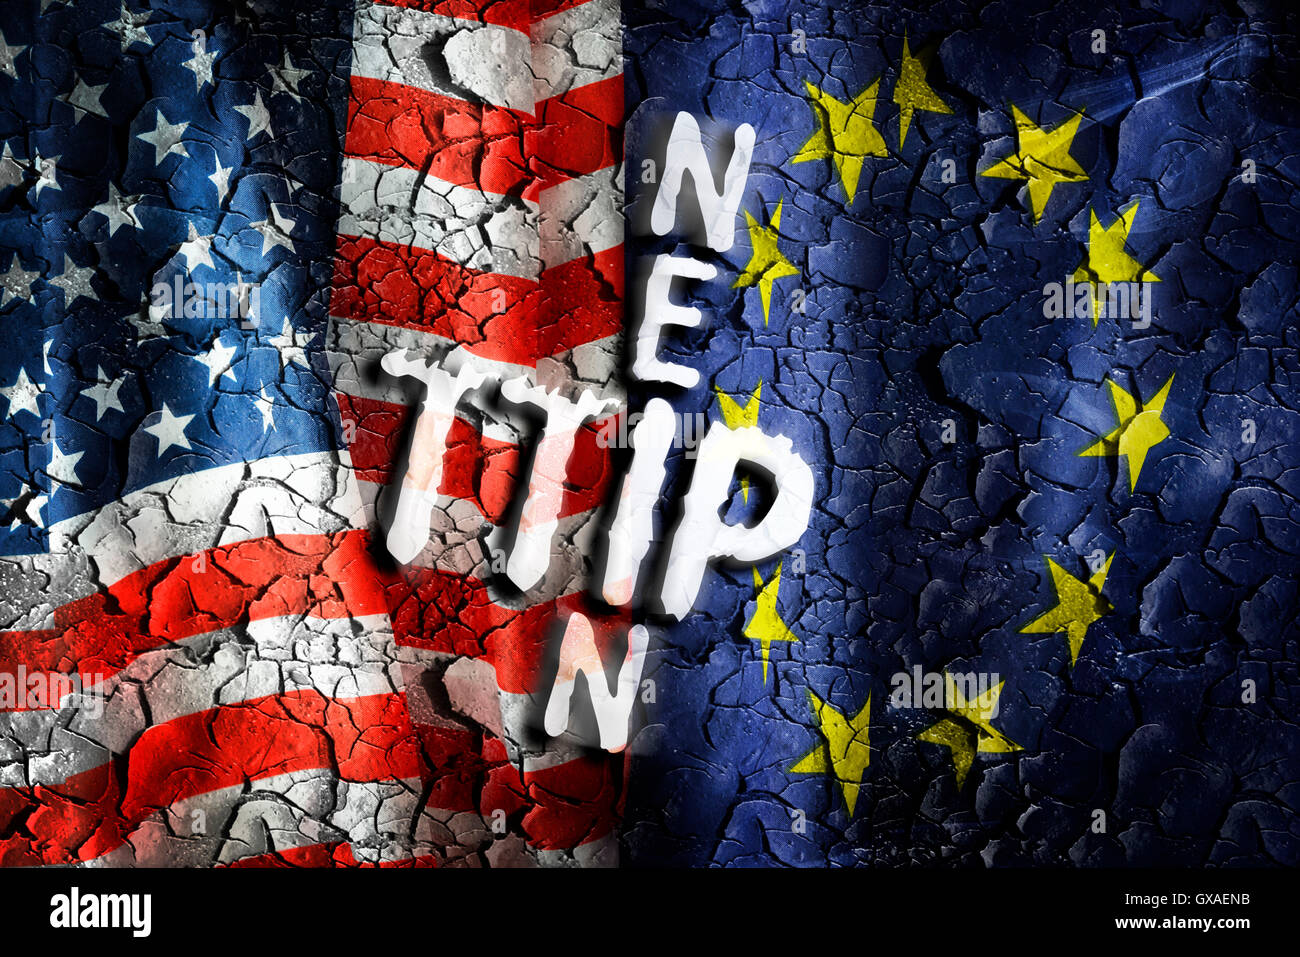 Fahnen von USA und EU, Symbolfoto Widerstand gegen das TTIP Freihandelsabkommen Stock Photo